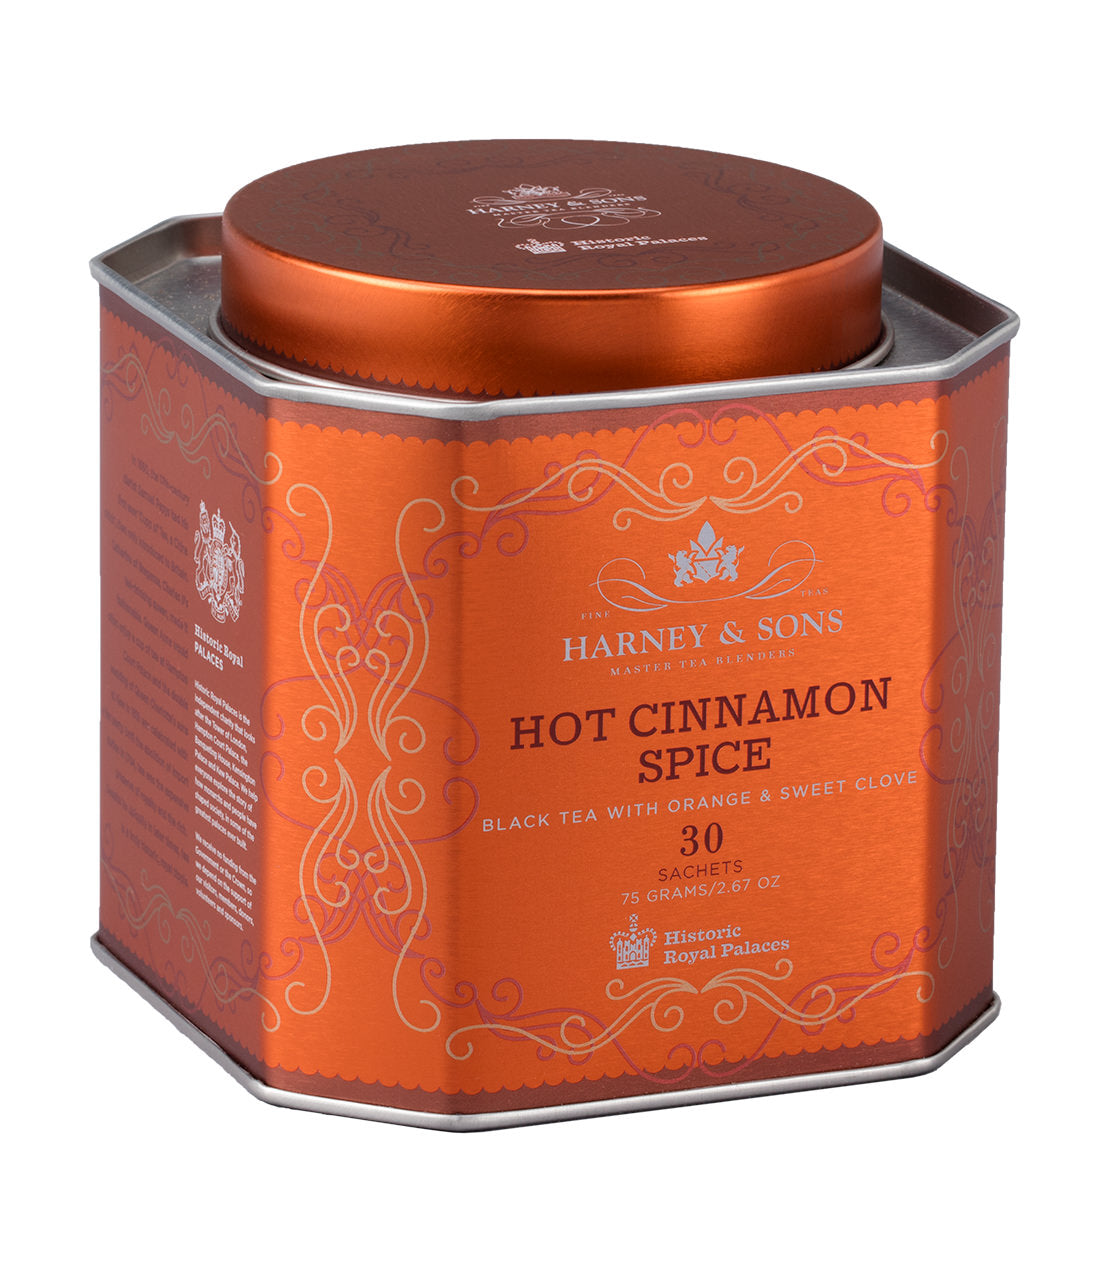 Hot Cinnamon Spice, HRP Tin of 30 Sachets - Sachets HRP Tin of 30 Sachets - Harney & Sons Fine Teas